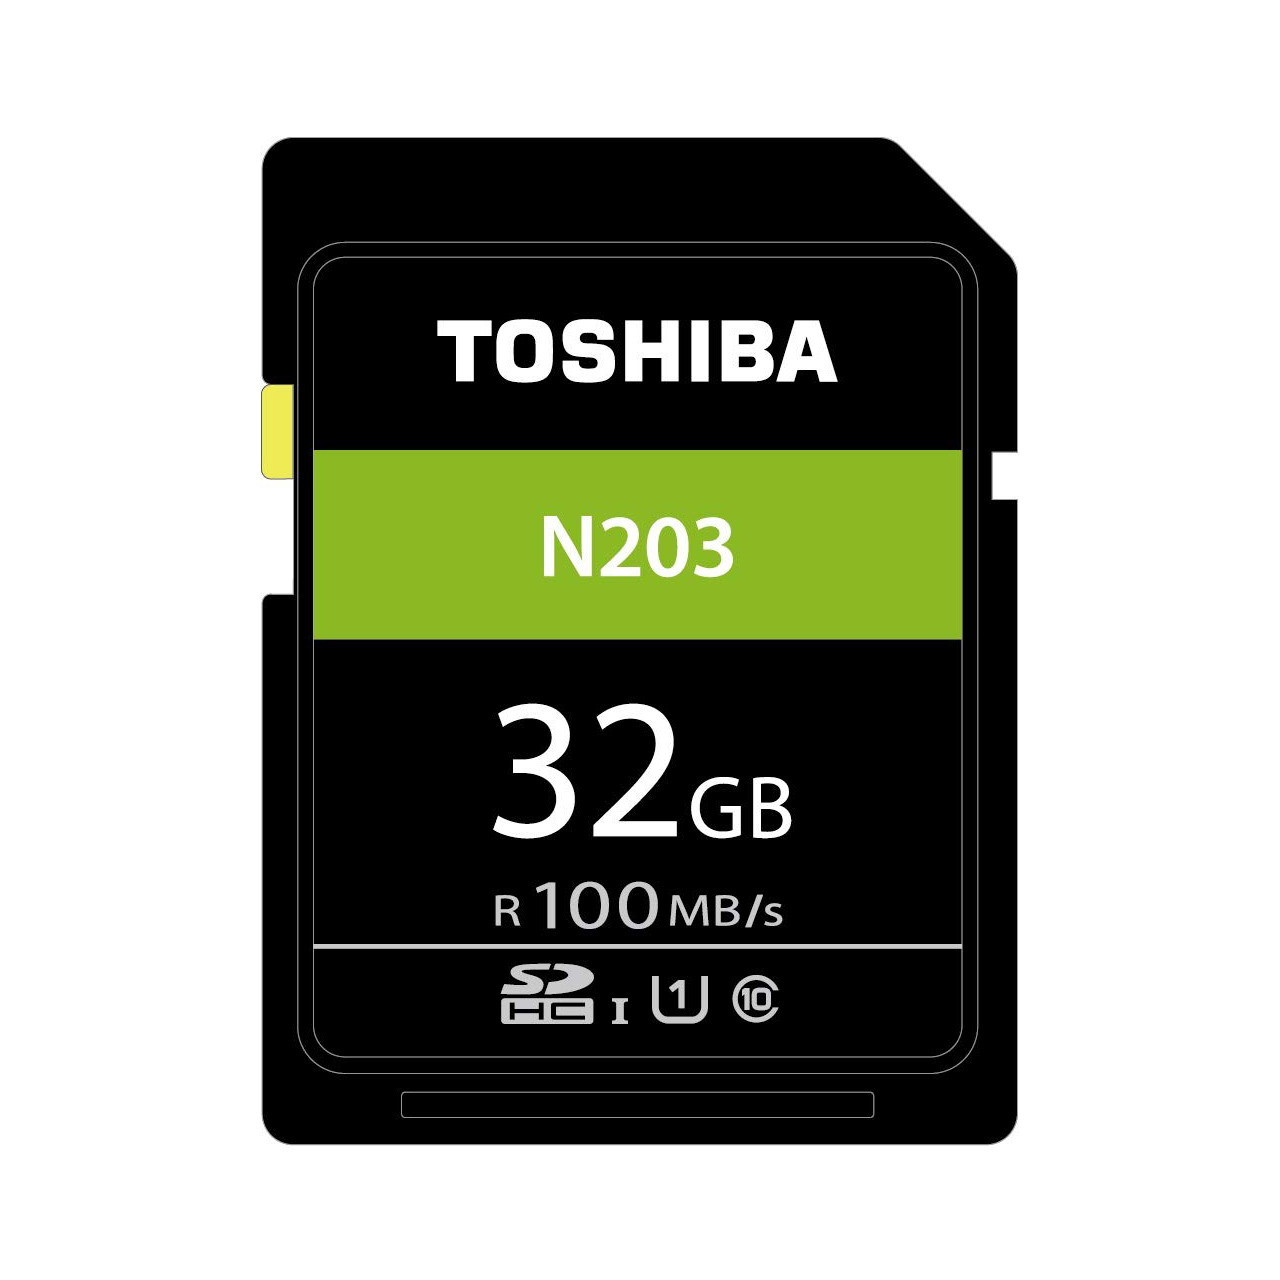 کارت حافظه SDXC توشیبا مدل N203 کلاس 10 استاندارد UHS-I 1 سرعت 100Mbps ظرفیت 32 گیگابایت